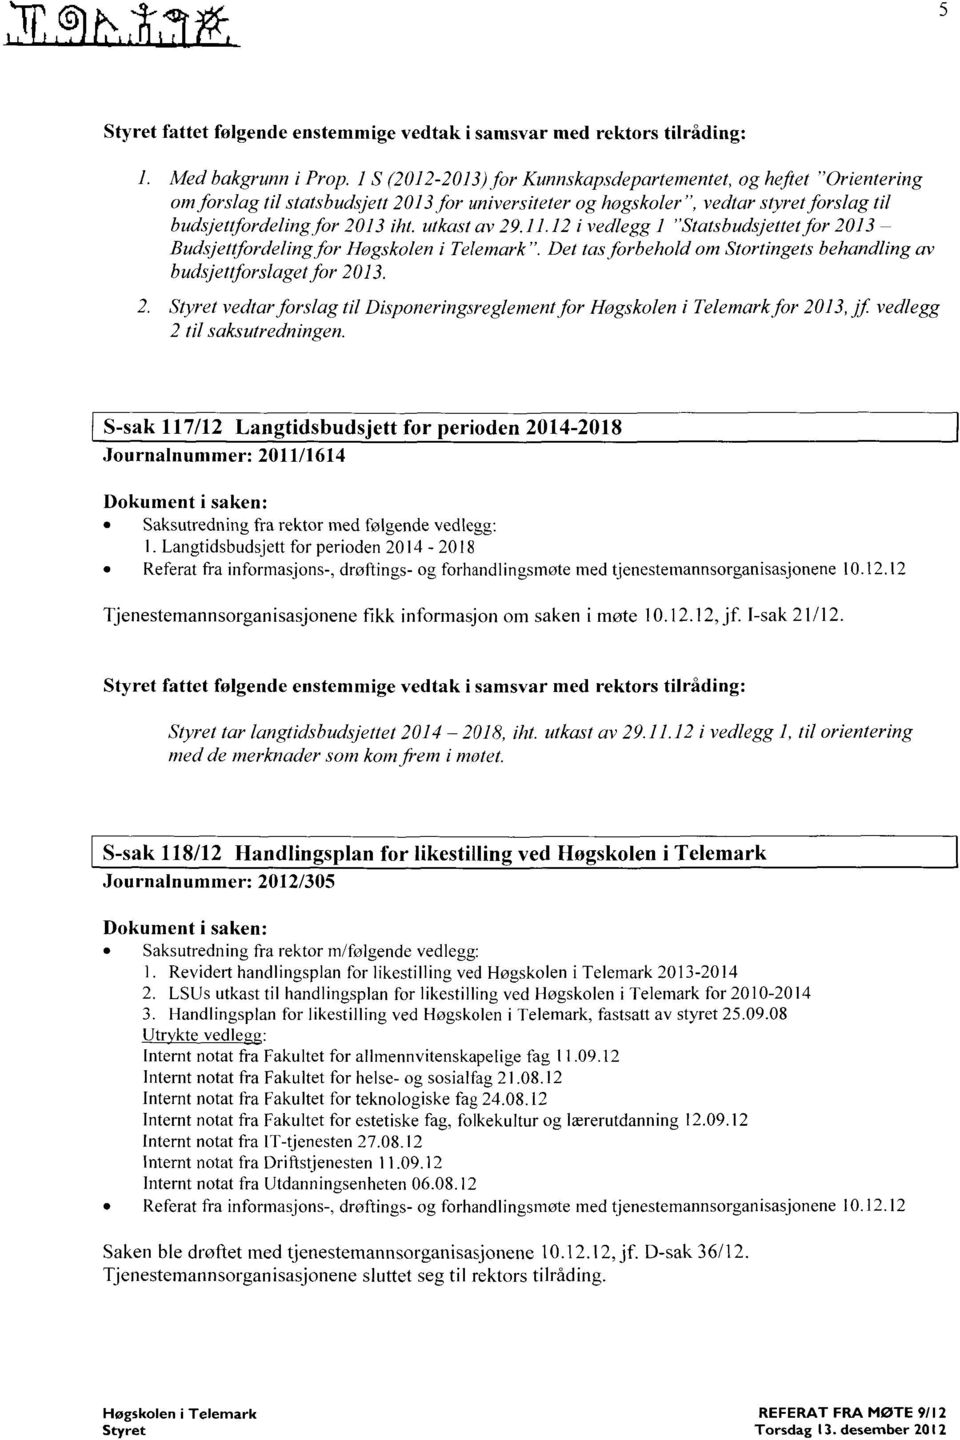 utkast av 29.11.12 i vedlegg I "Statsbudsjettet for 2013 Budsjettfordeling for Ilogskolen i Telemark". Det tas forbehold om Stortingets behandling av budsjettforslaget for 2013.